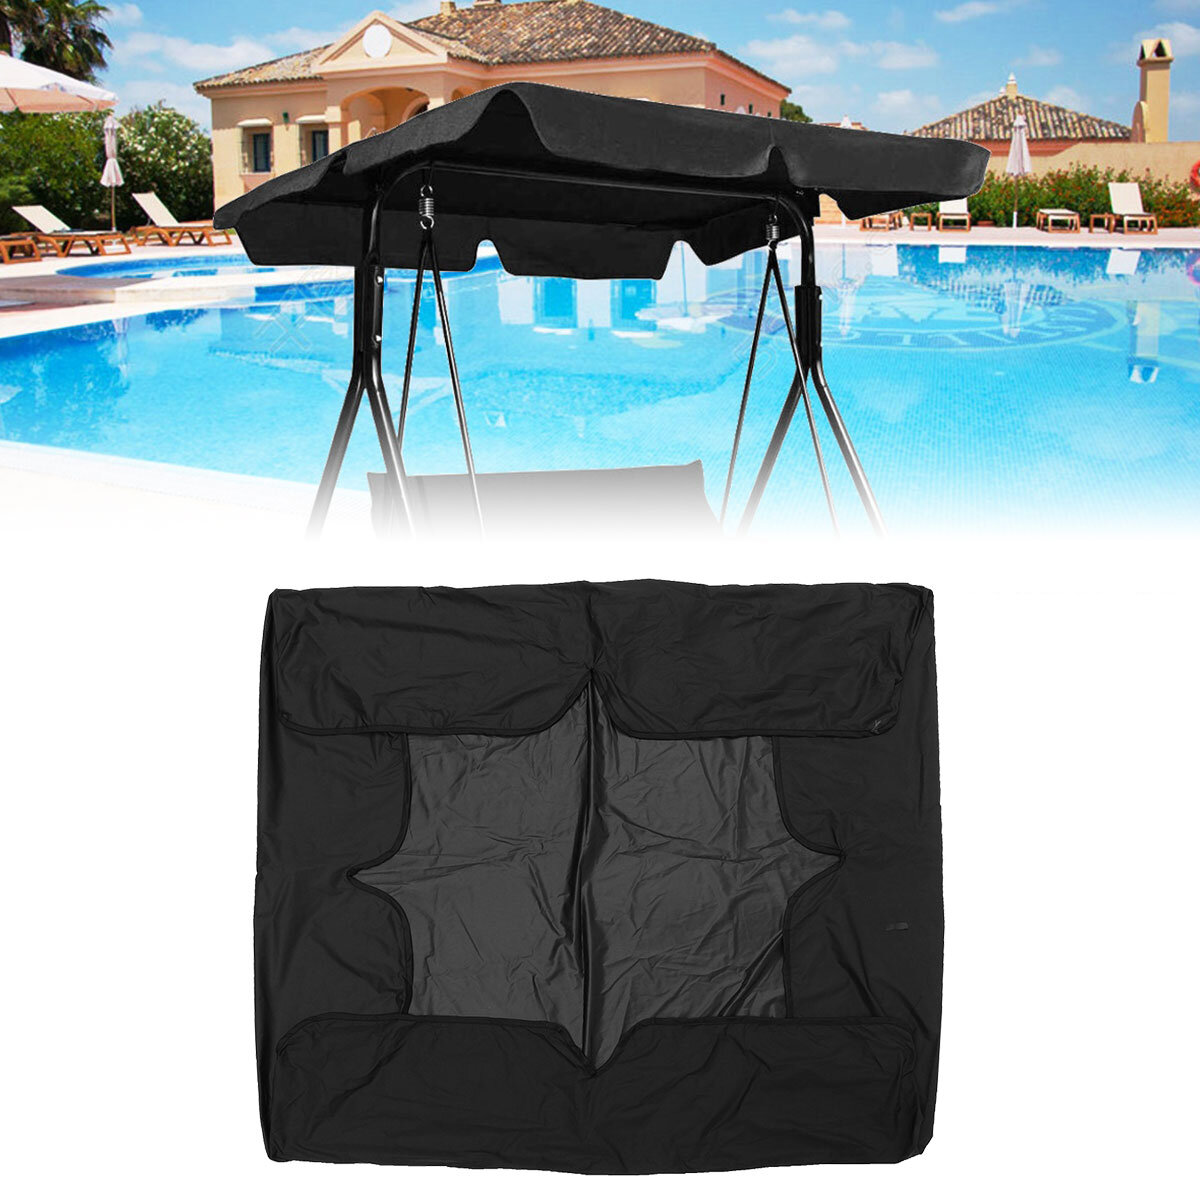 2 θέσεων Patio Swing Hammock Chair Anti-UV Waterproof Canopy Spare Cover   Backrest   Cushion Cover